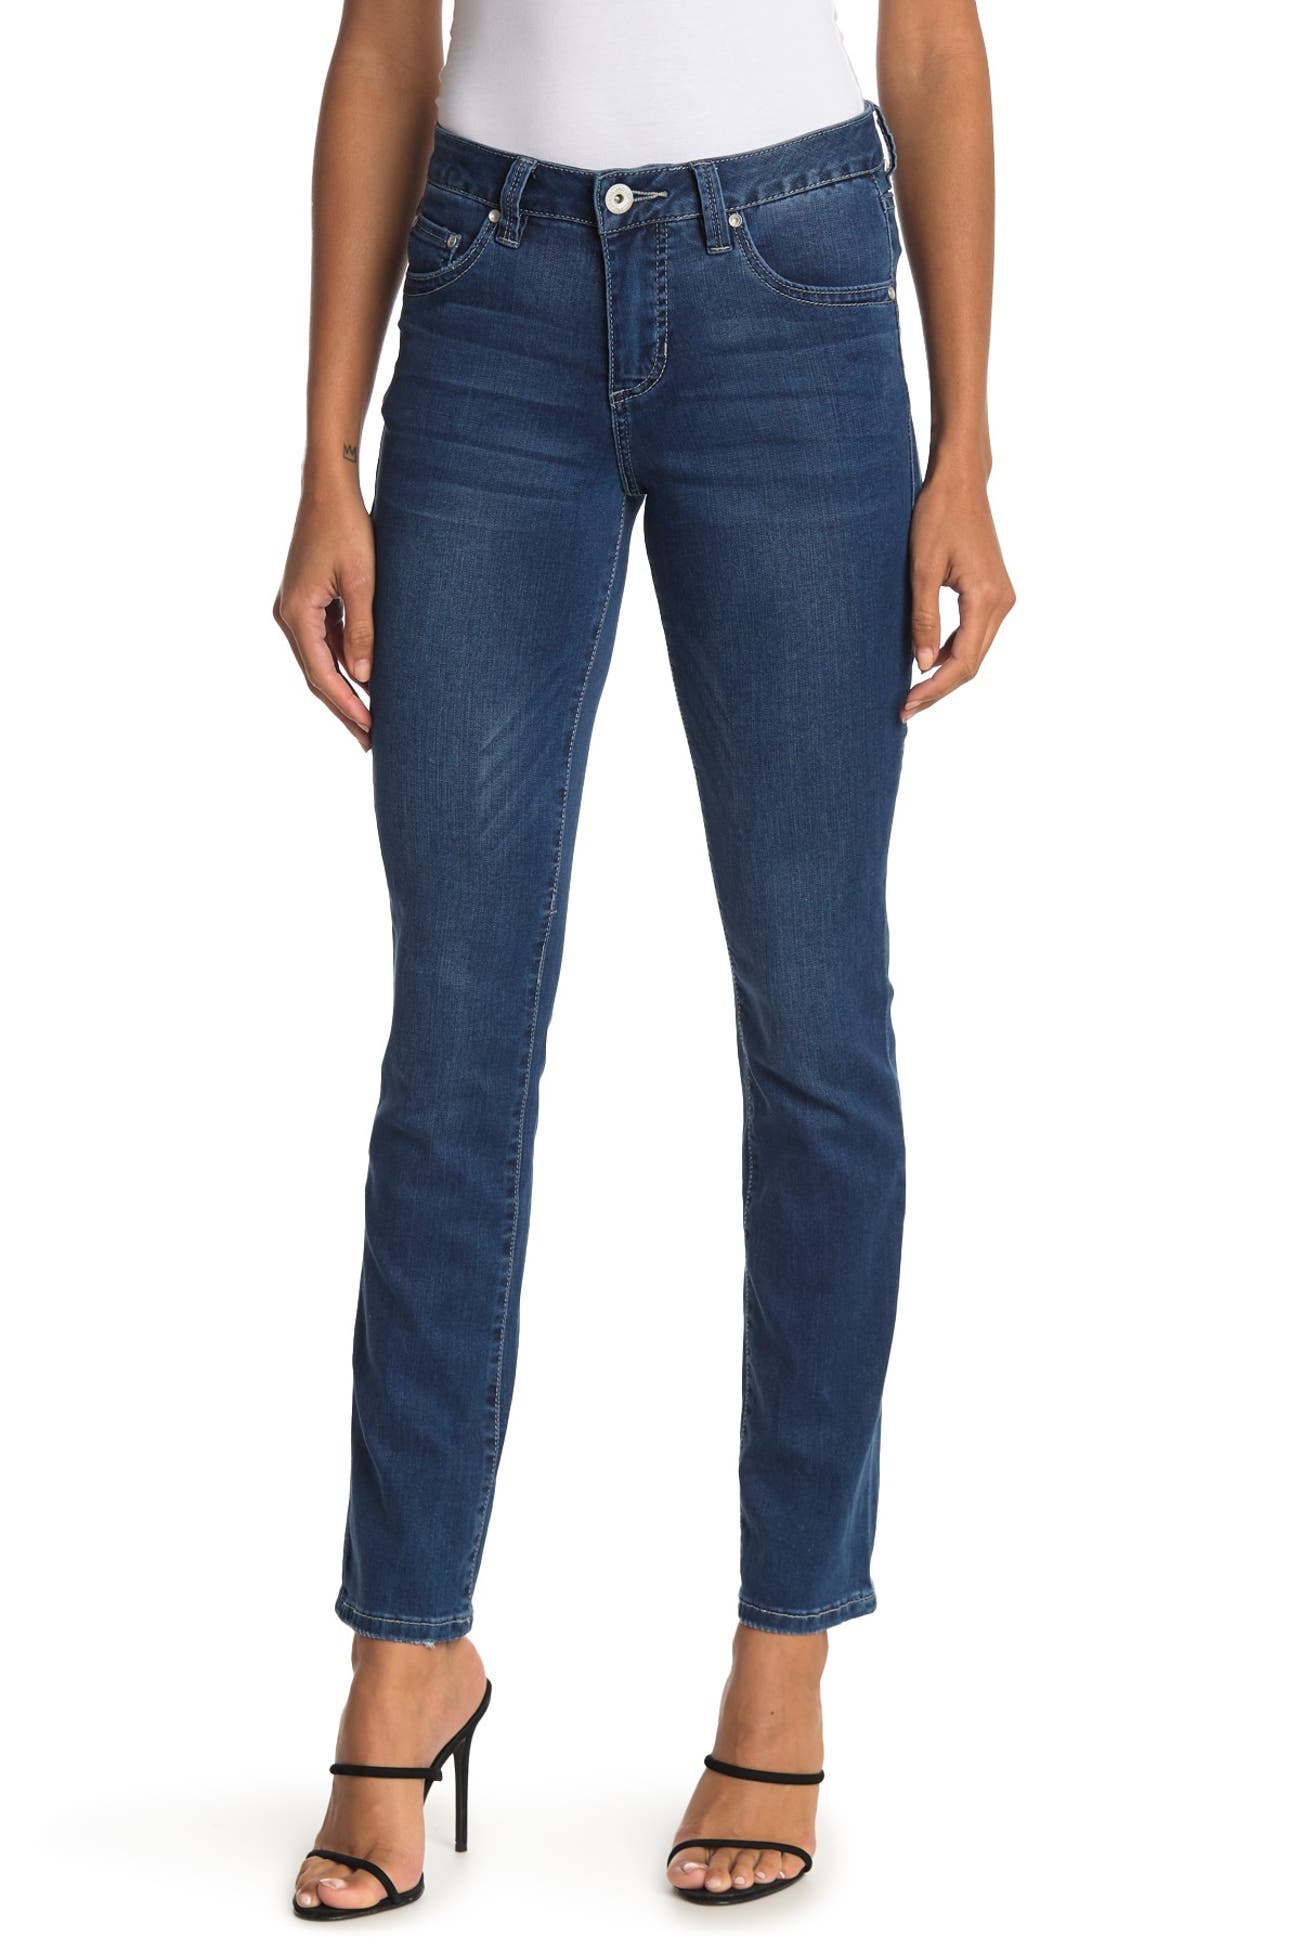 JAG Jeans | Ellen Embroidered Straight Jeans | Nordstrom Rack